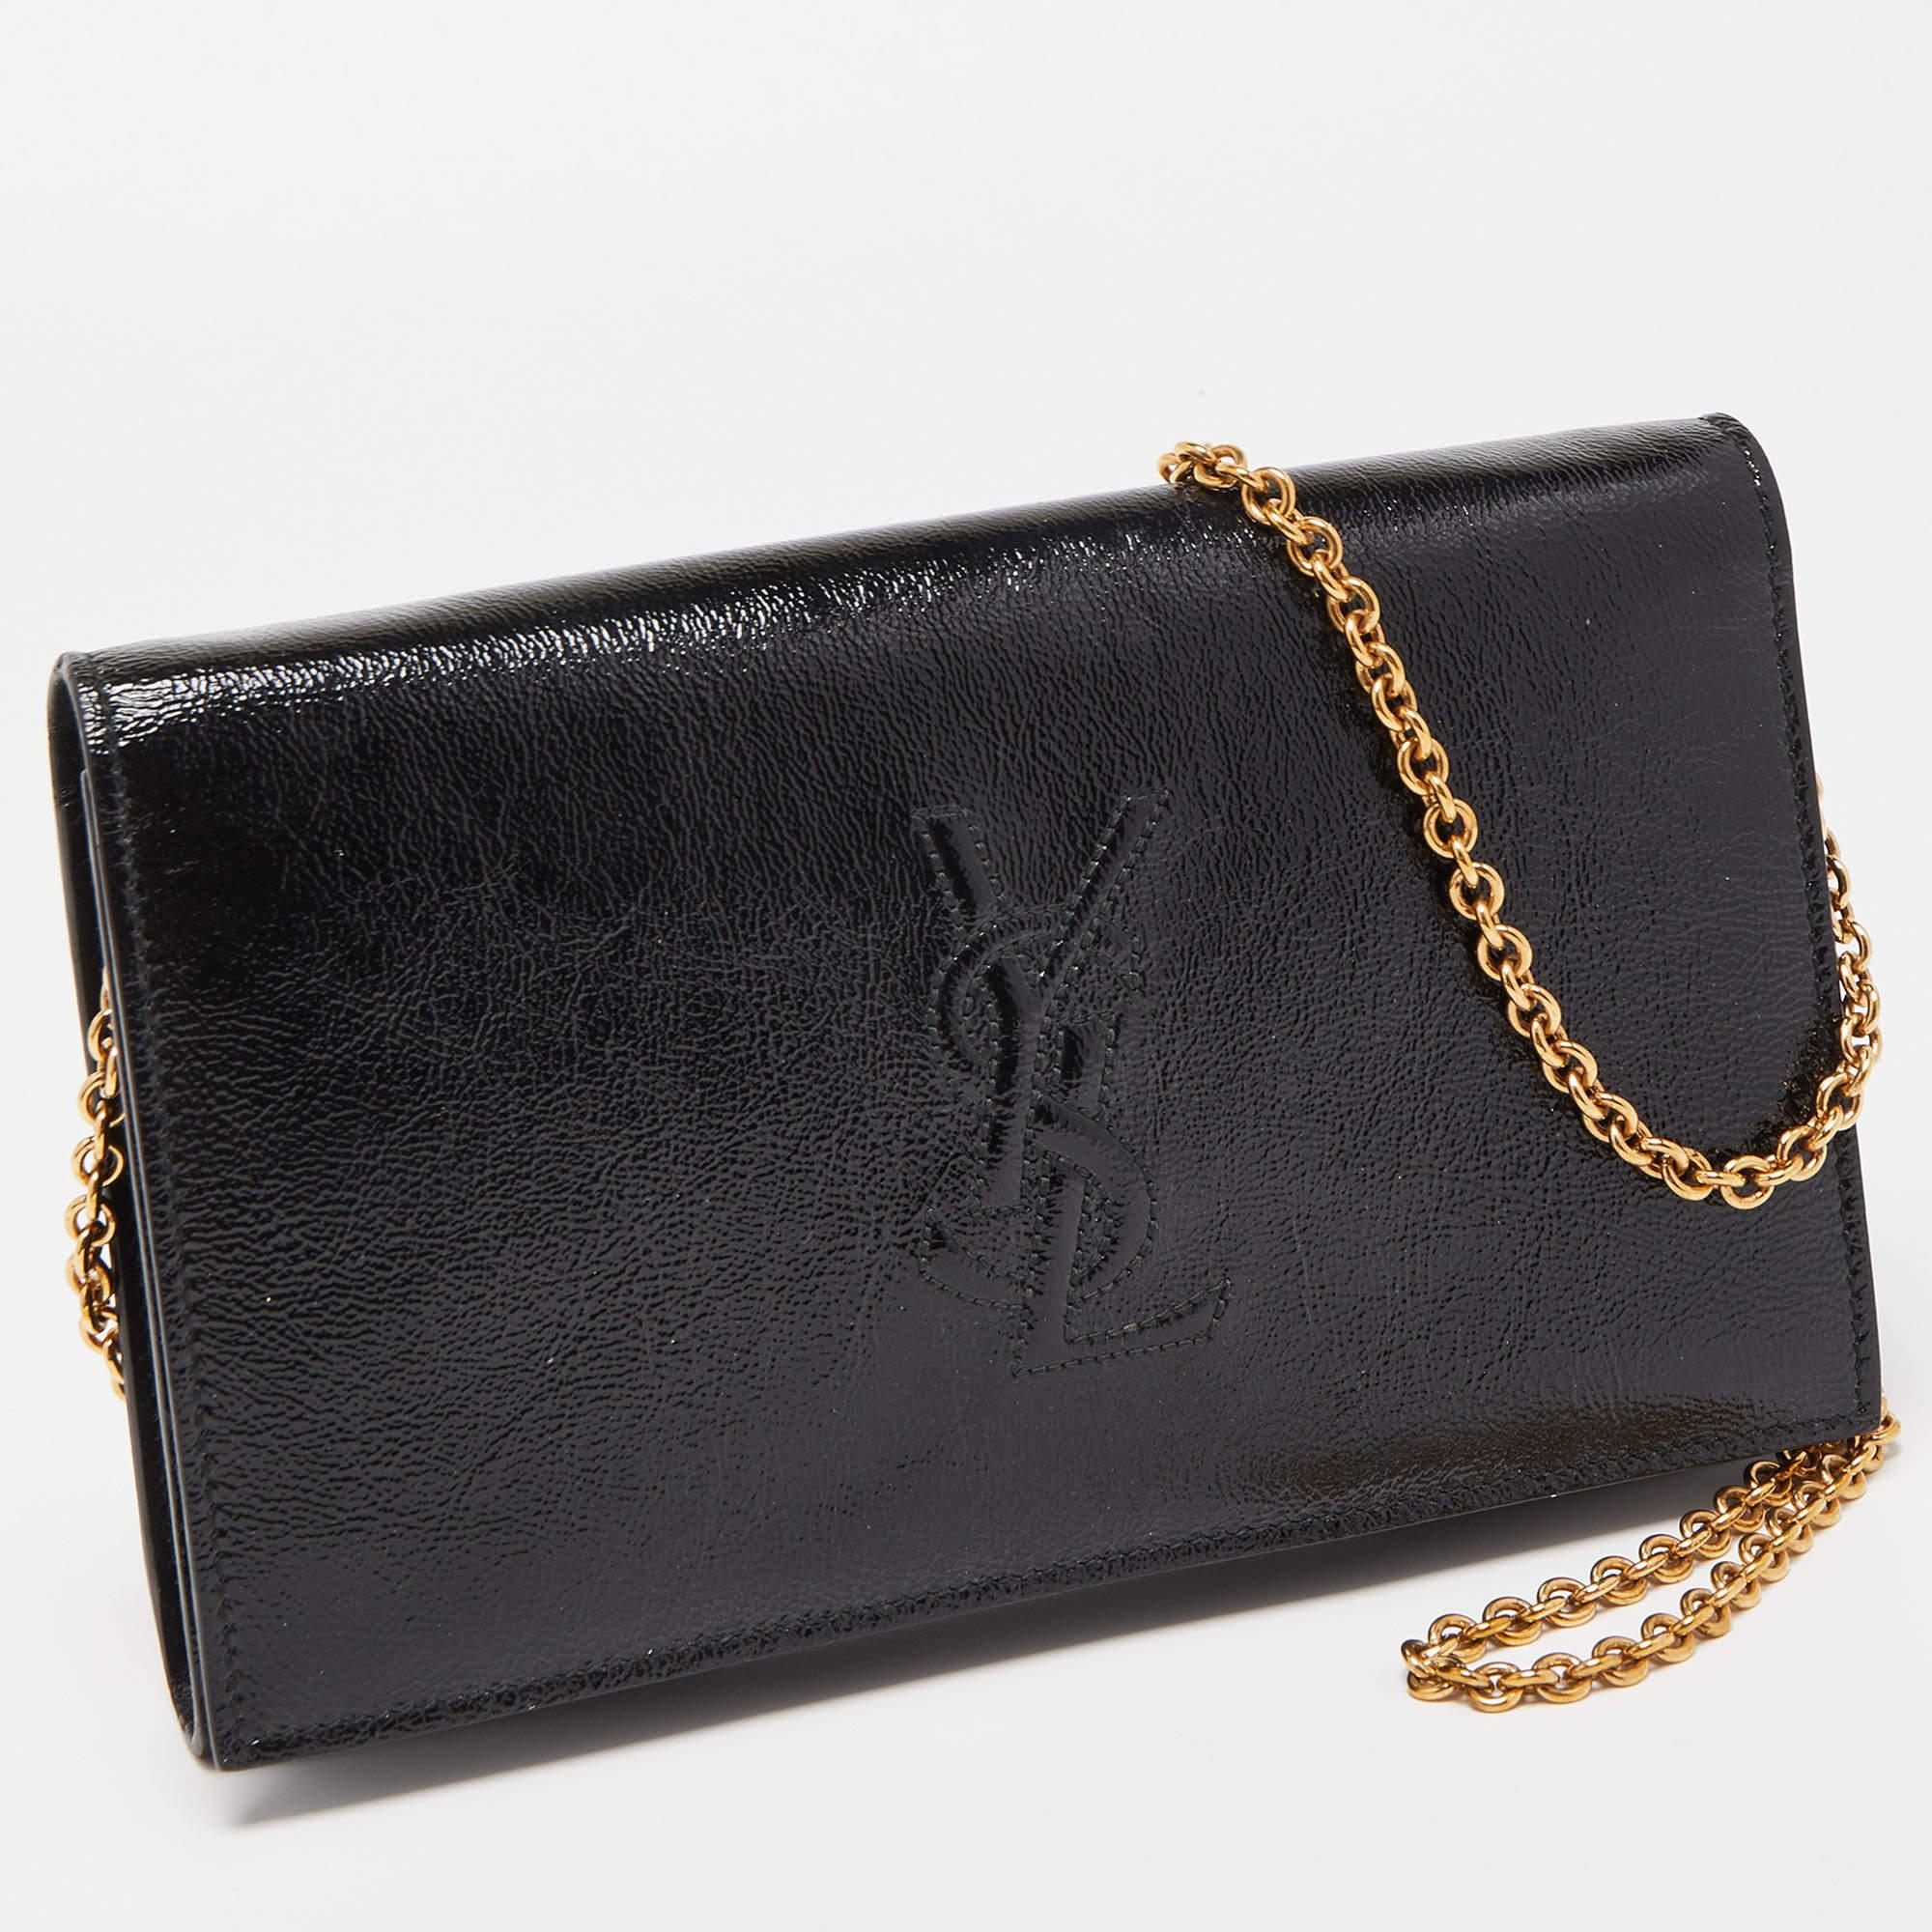 Yves Saint Laurent Black Patent Leather Belle De Jour Wallet on Chain ...